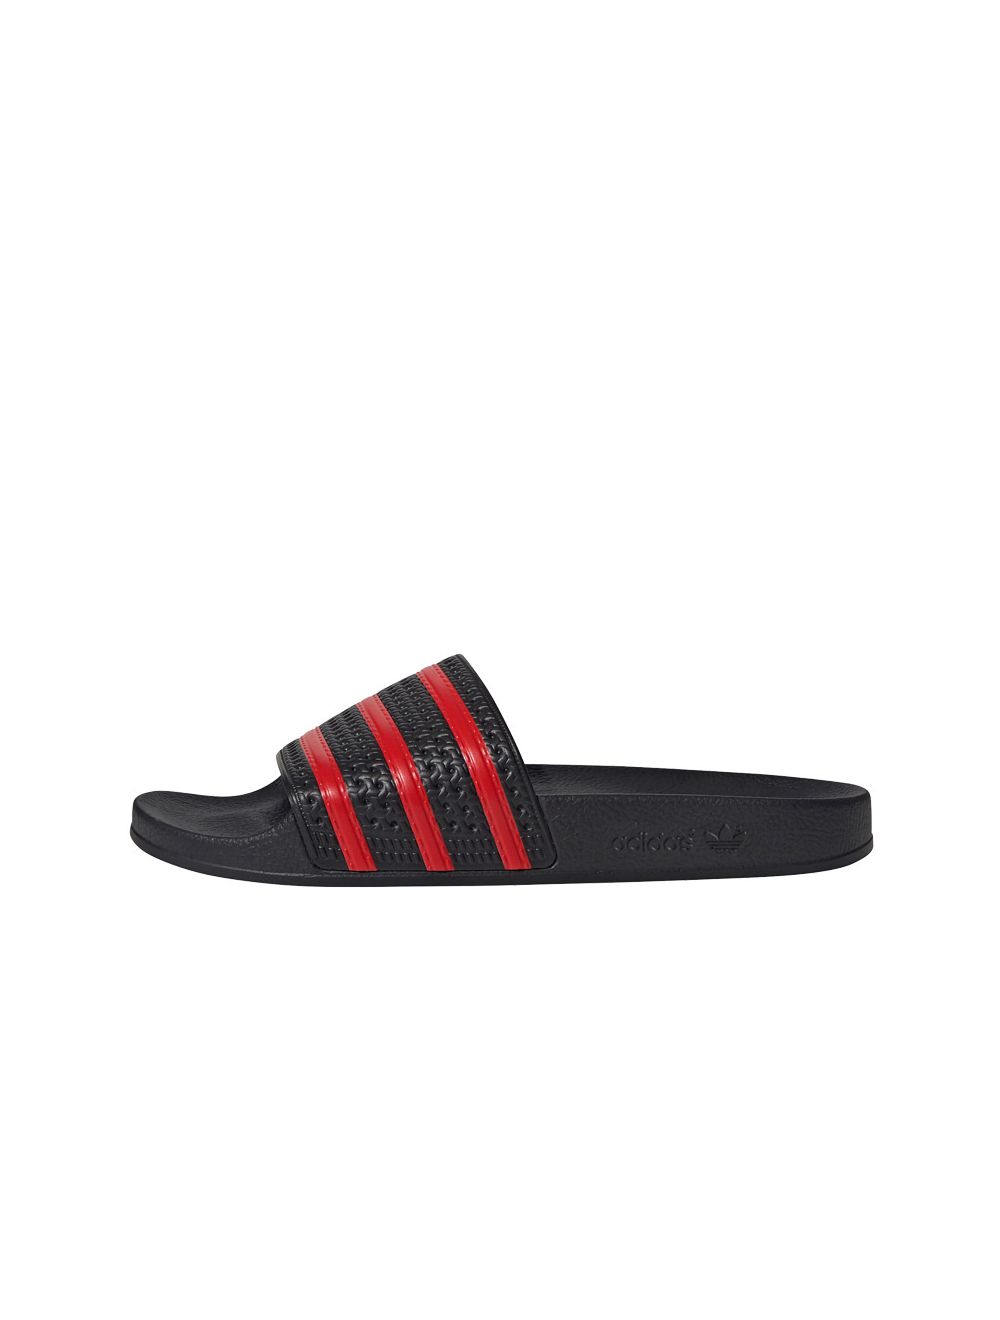 adidas Originals Adilette Sandal Mens Black Red